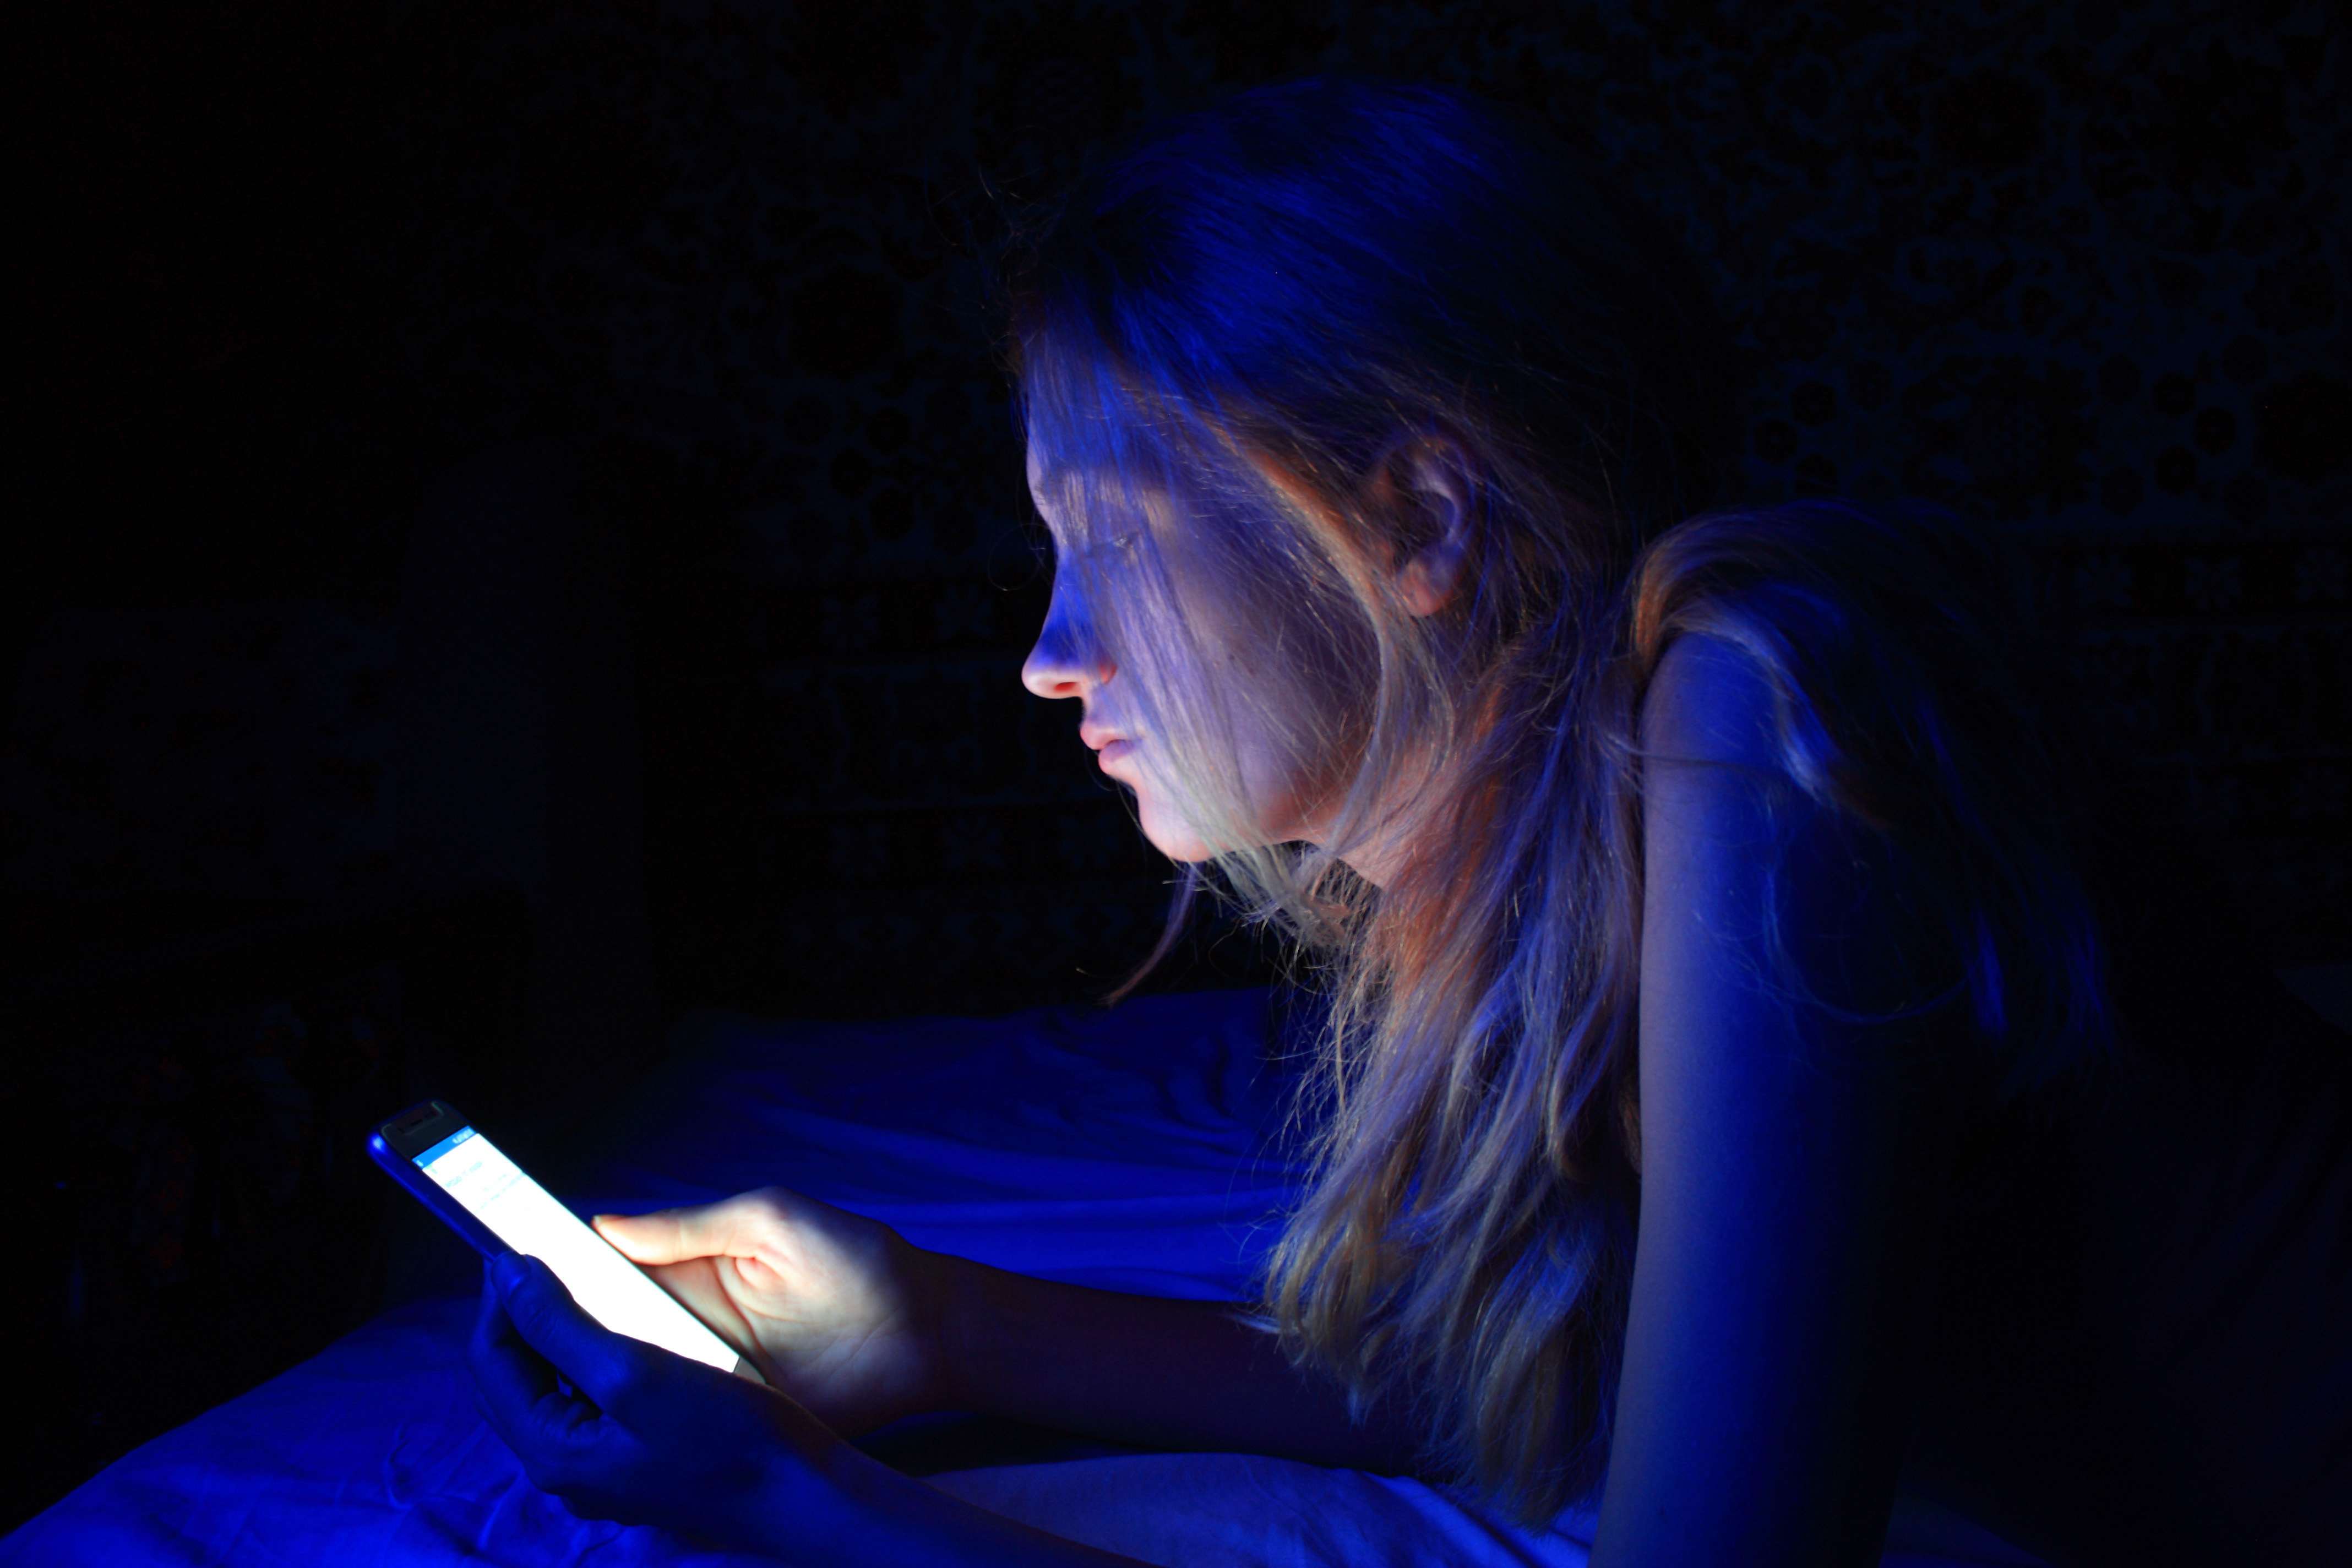 Mulher deitada na cama mexendo no celular que está emitindo uma luz azul